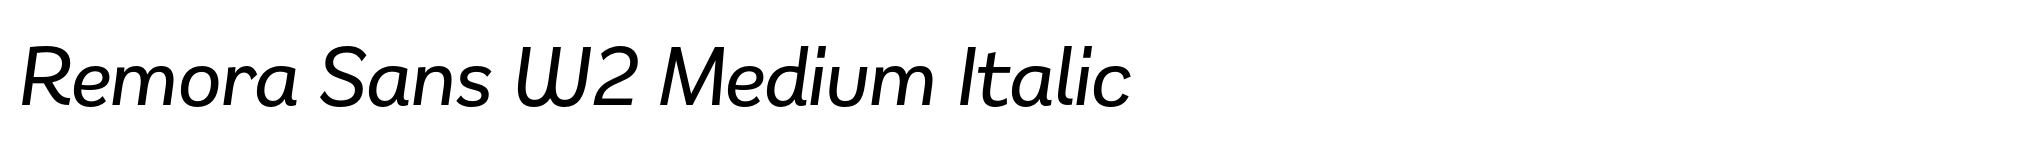 Remora Sans W2 Medium Italic image